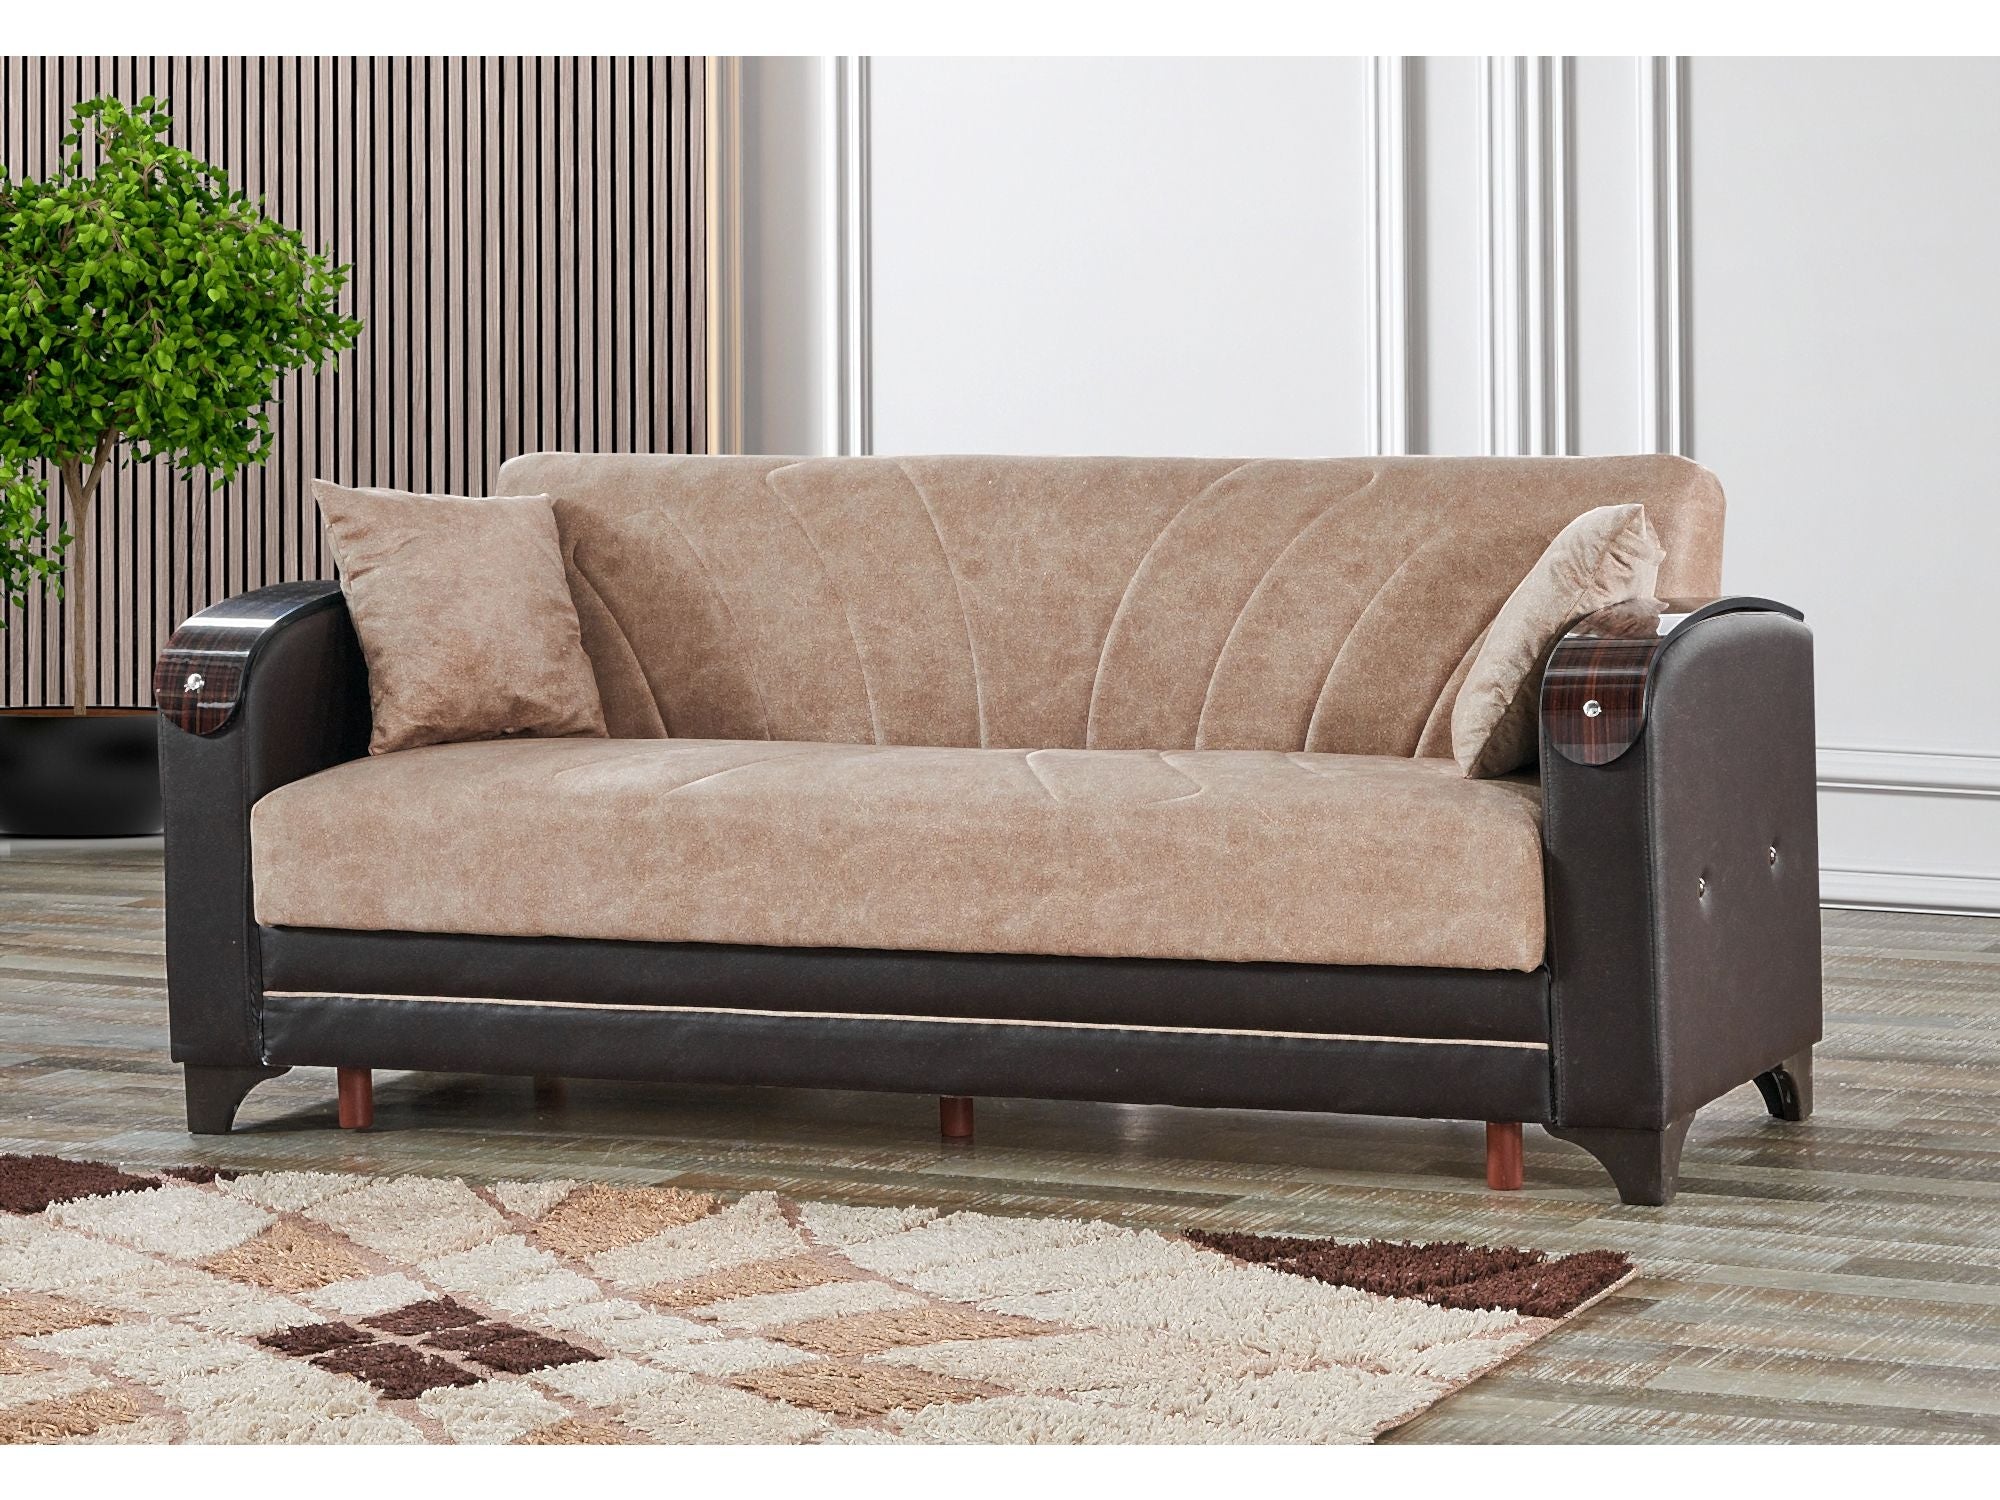 Senem Convertible Livingroom (2 Sofa & 2 Chair) Light Brown